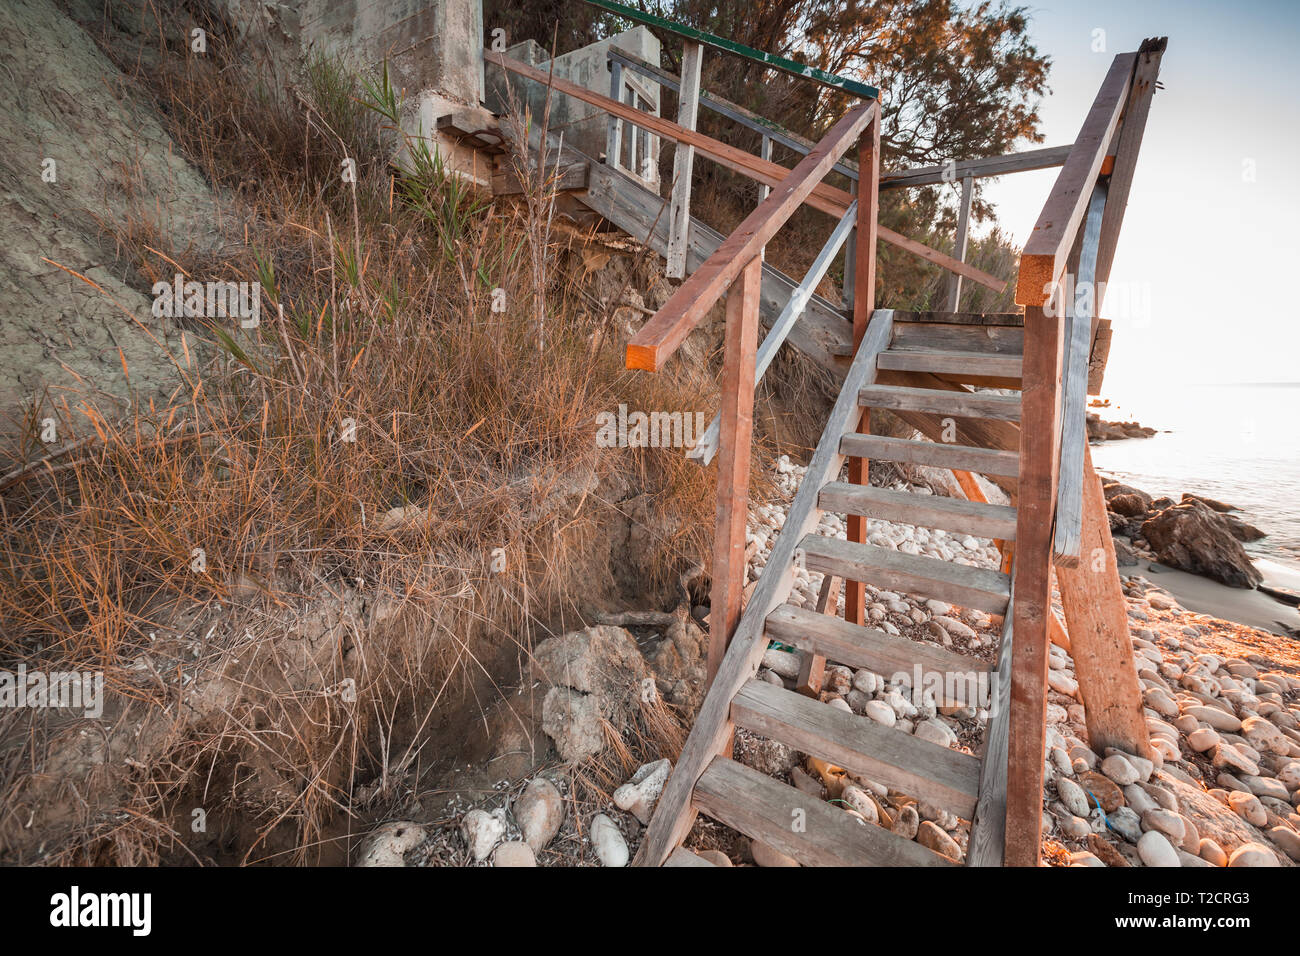 Vue en perspective d'escaliers de bois sur la plage. Côte de l'île de Zakynthos, Grèce Banque D'Images